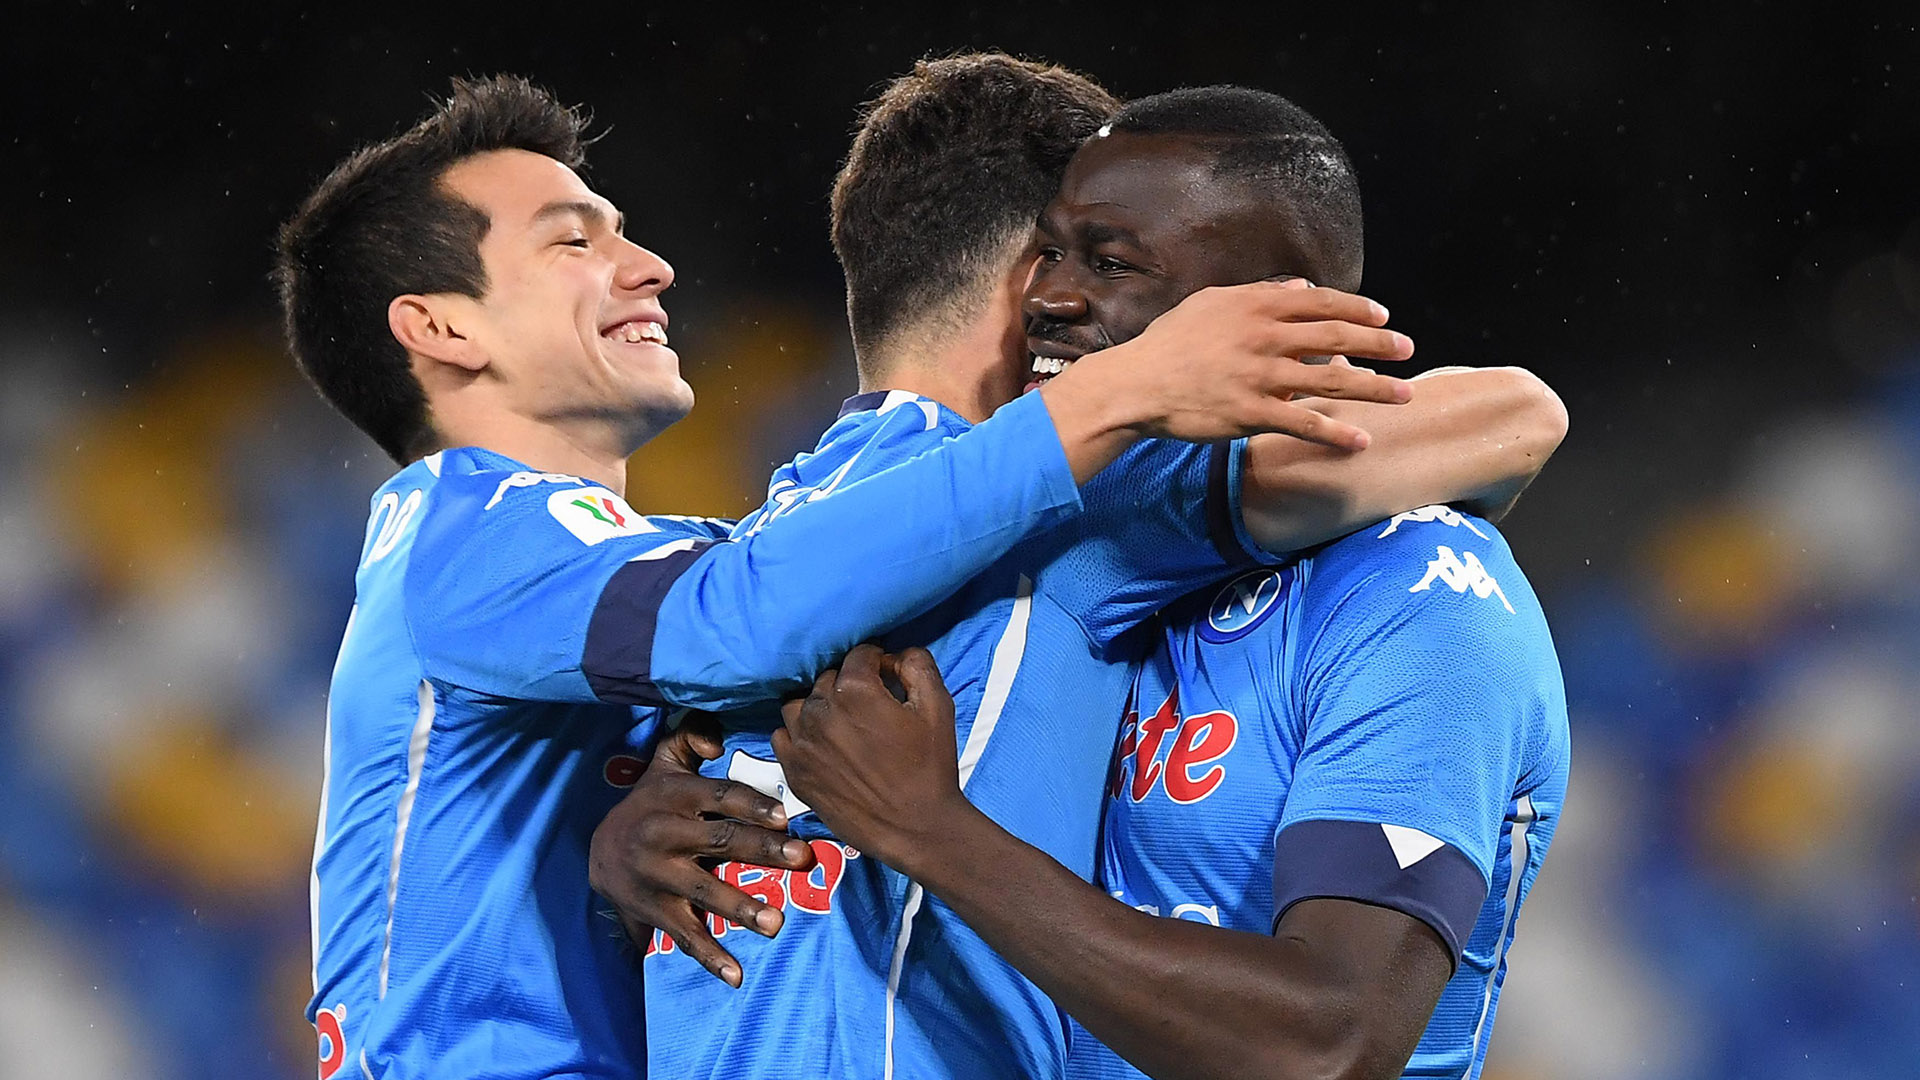 Coppa Italia: Napoli-Spezia 4-2, le foto